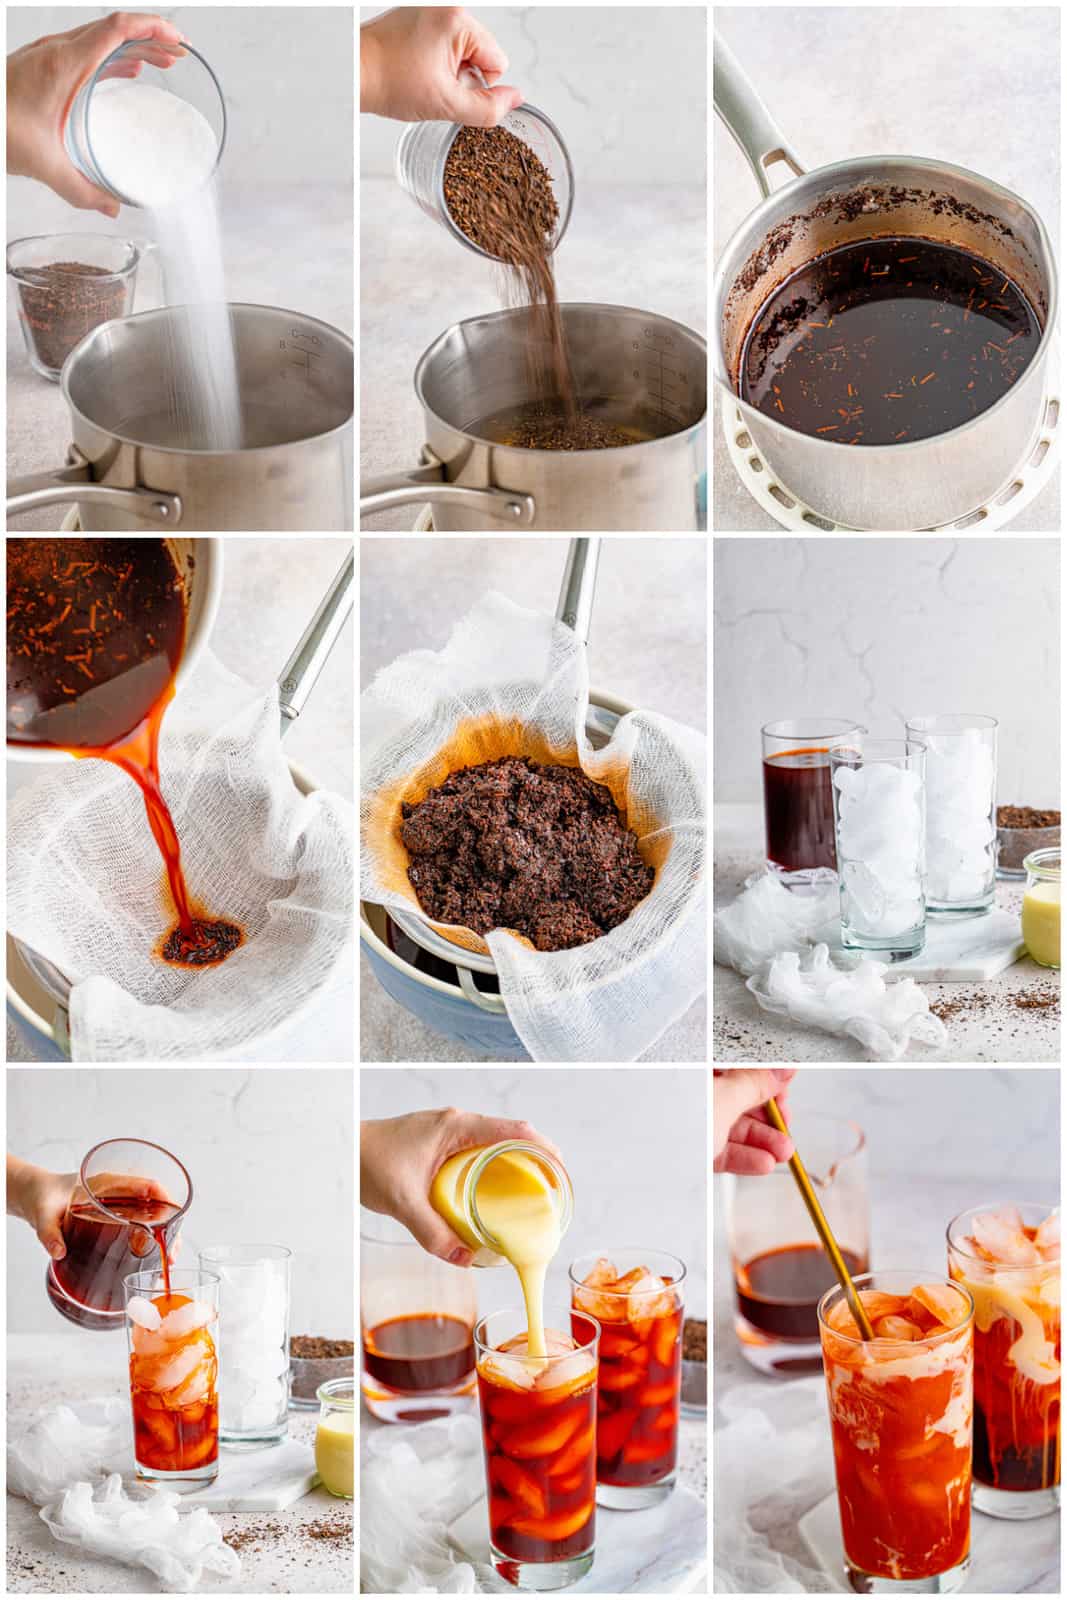 Step by step photos on how to make Thai Iced Tea